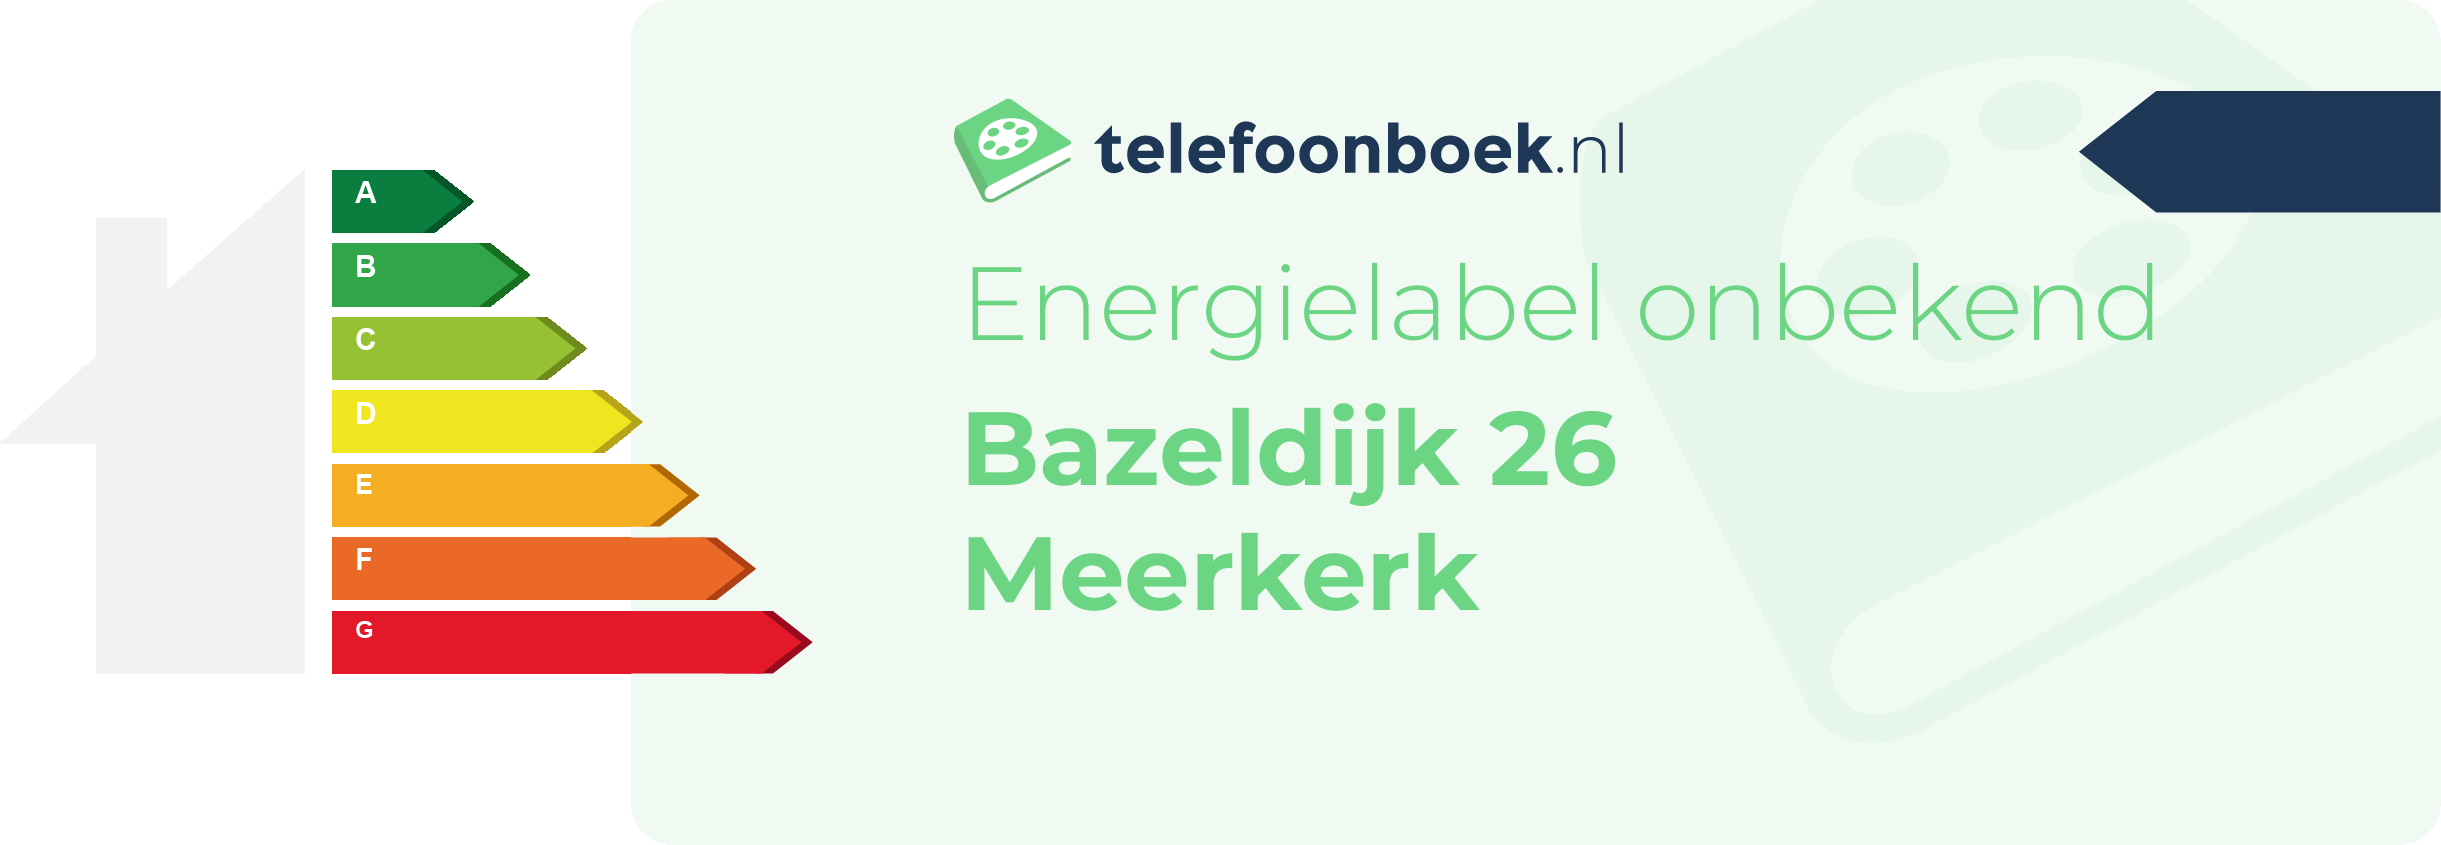 Energielabel Bazeldijk 26 Meerkerk